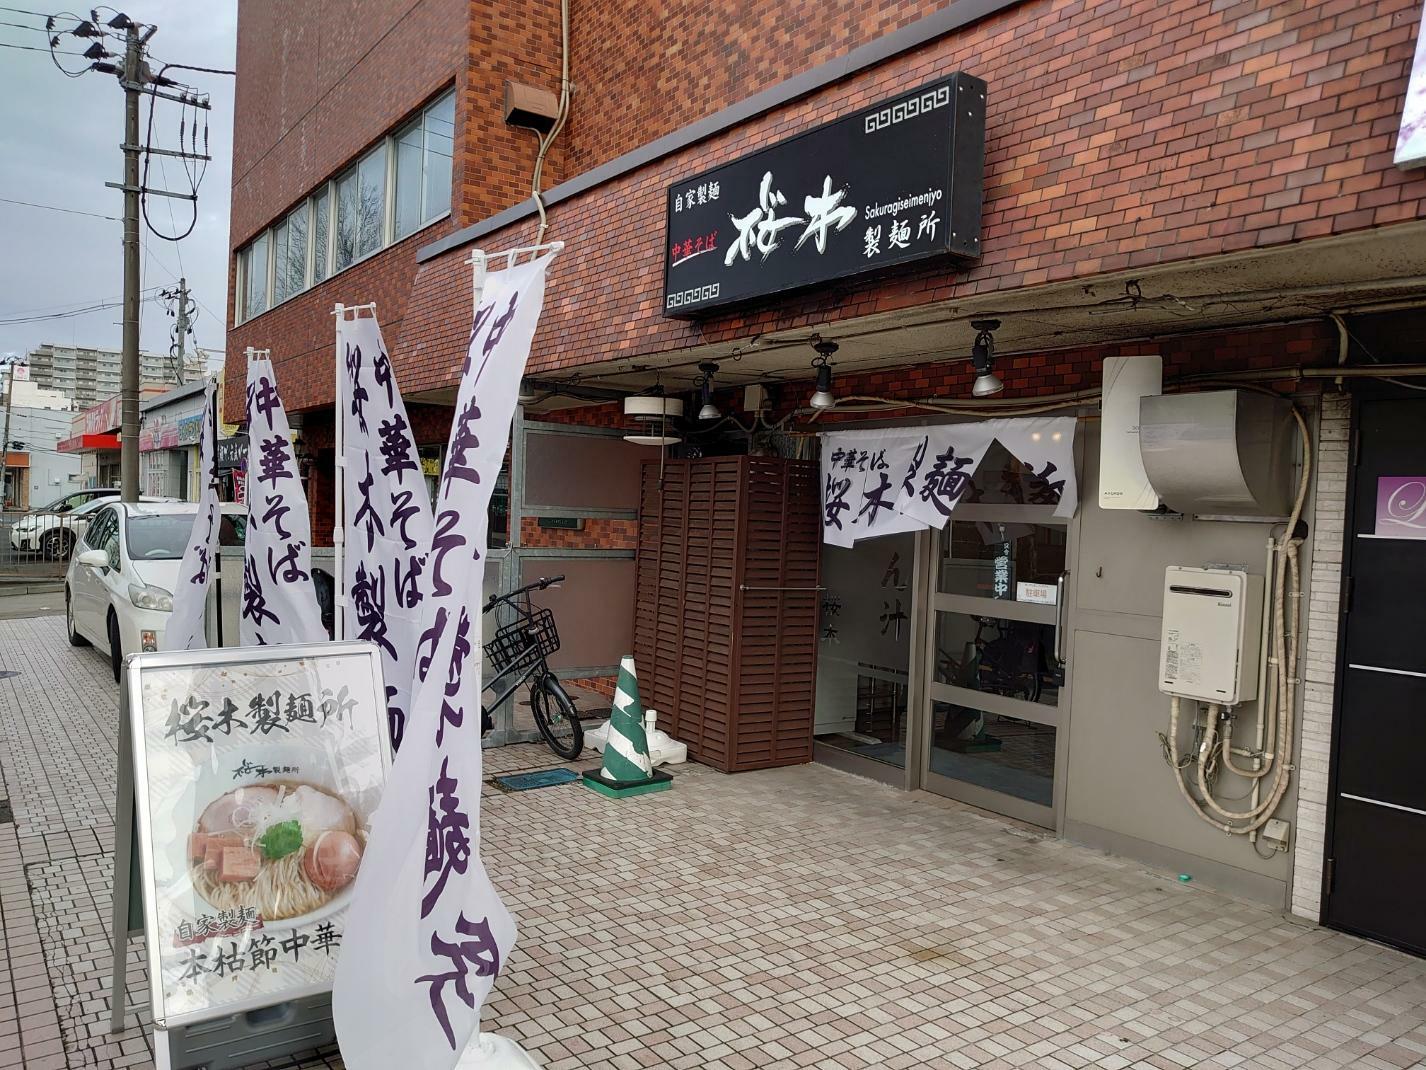 「桜木製麺所」さん外観